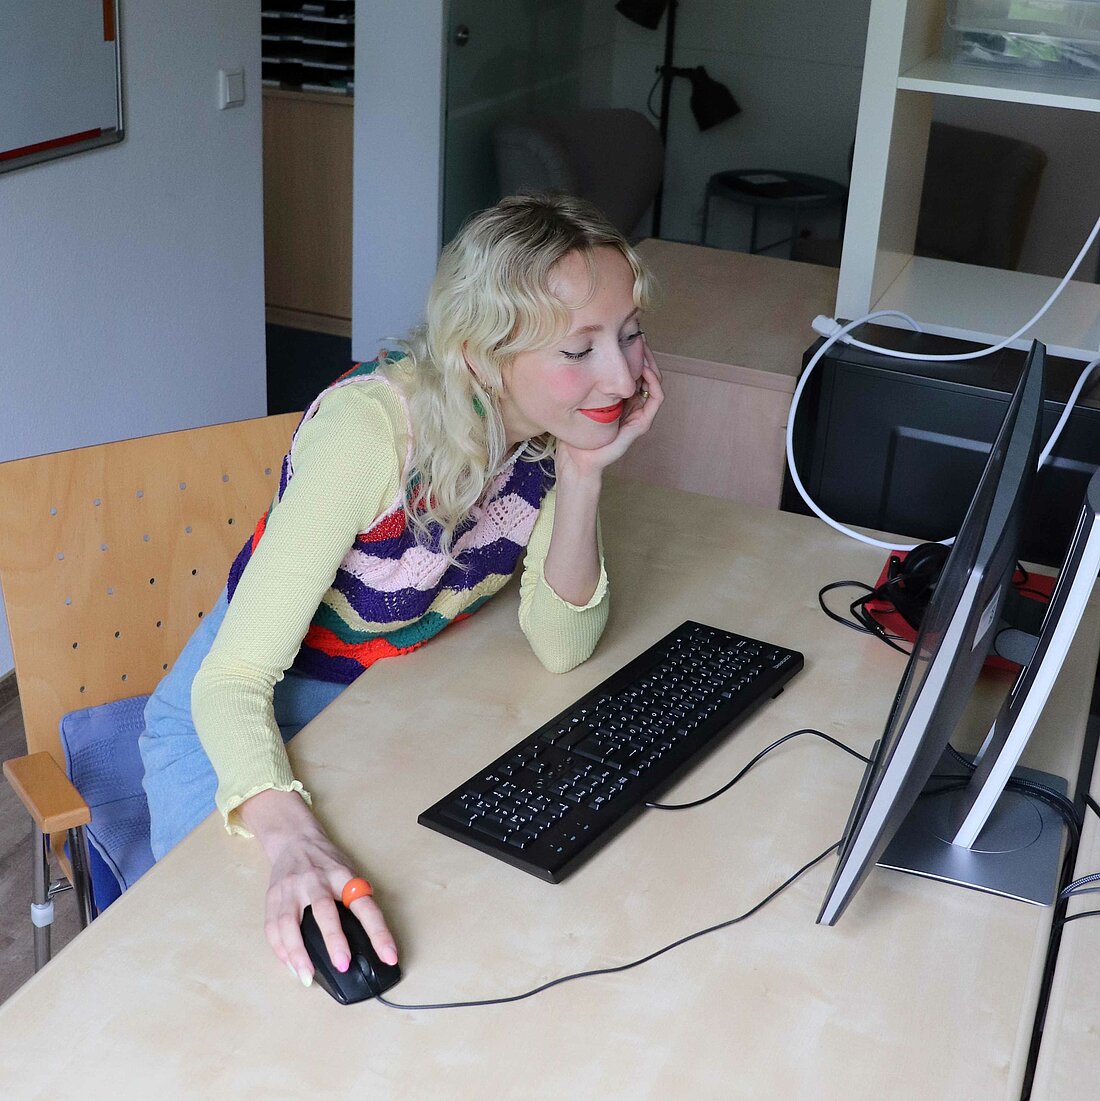 Zu sehen ist eine Frau, die an einem Computer sitzt